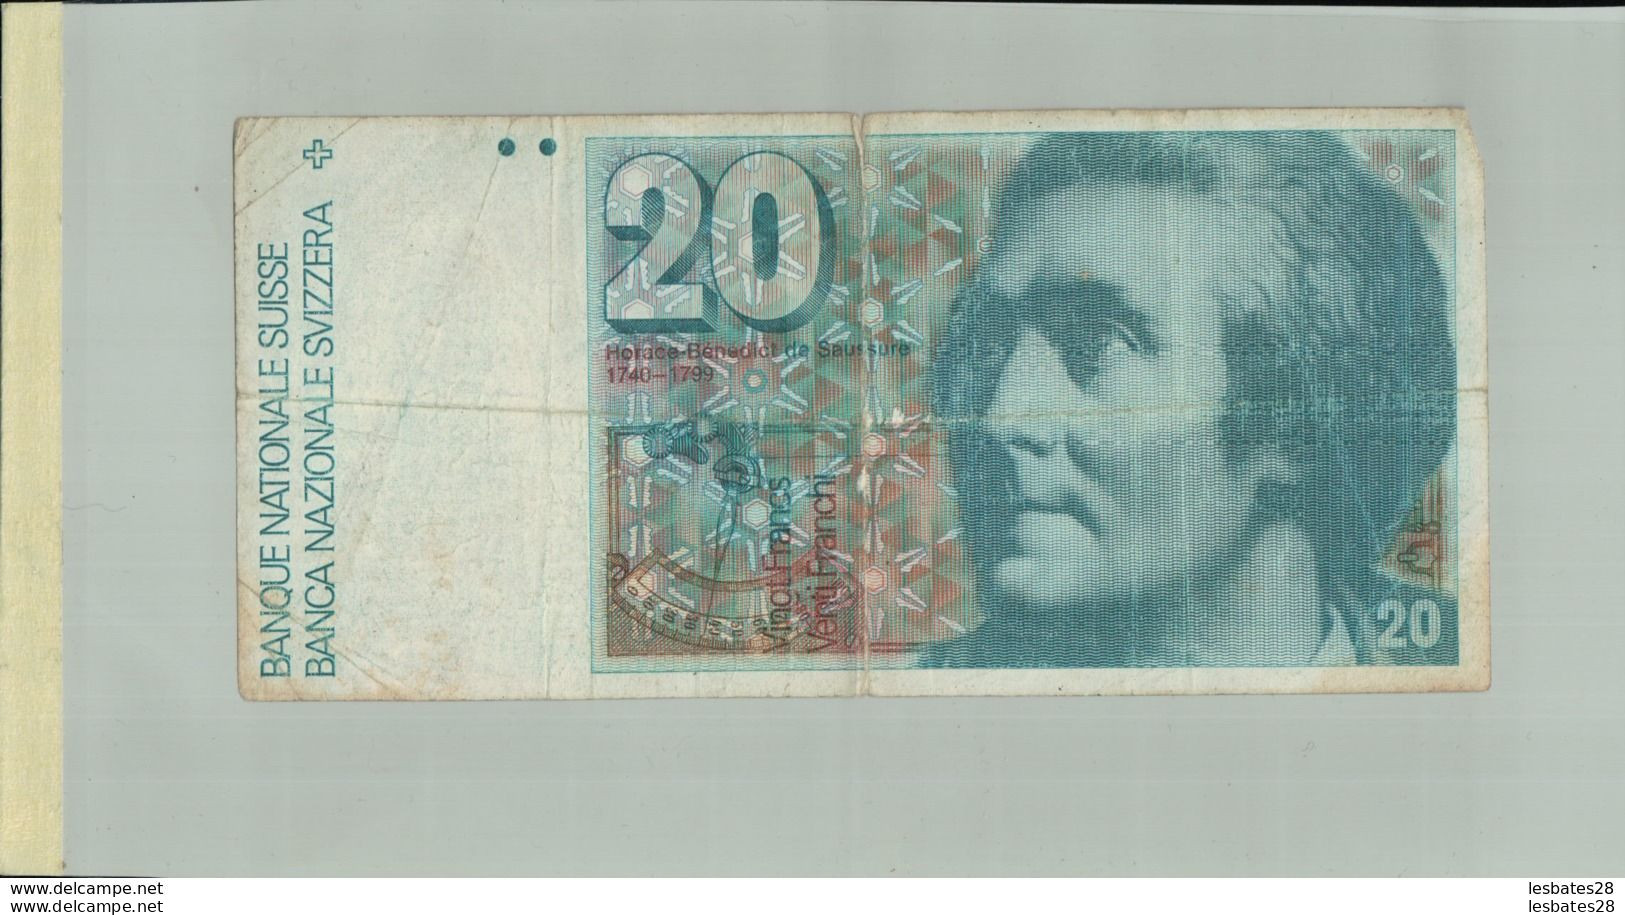 Billet De Banque SUISSE 20 Francs Nd (1982)  Schweiz  UNC " HORACE-BÉNÉDICT DE SAUSSURE"  DEC 2019 Gerar - Suiza